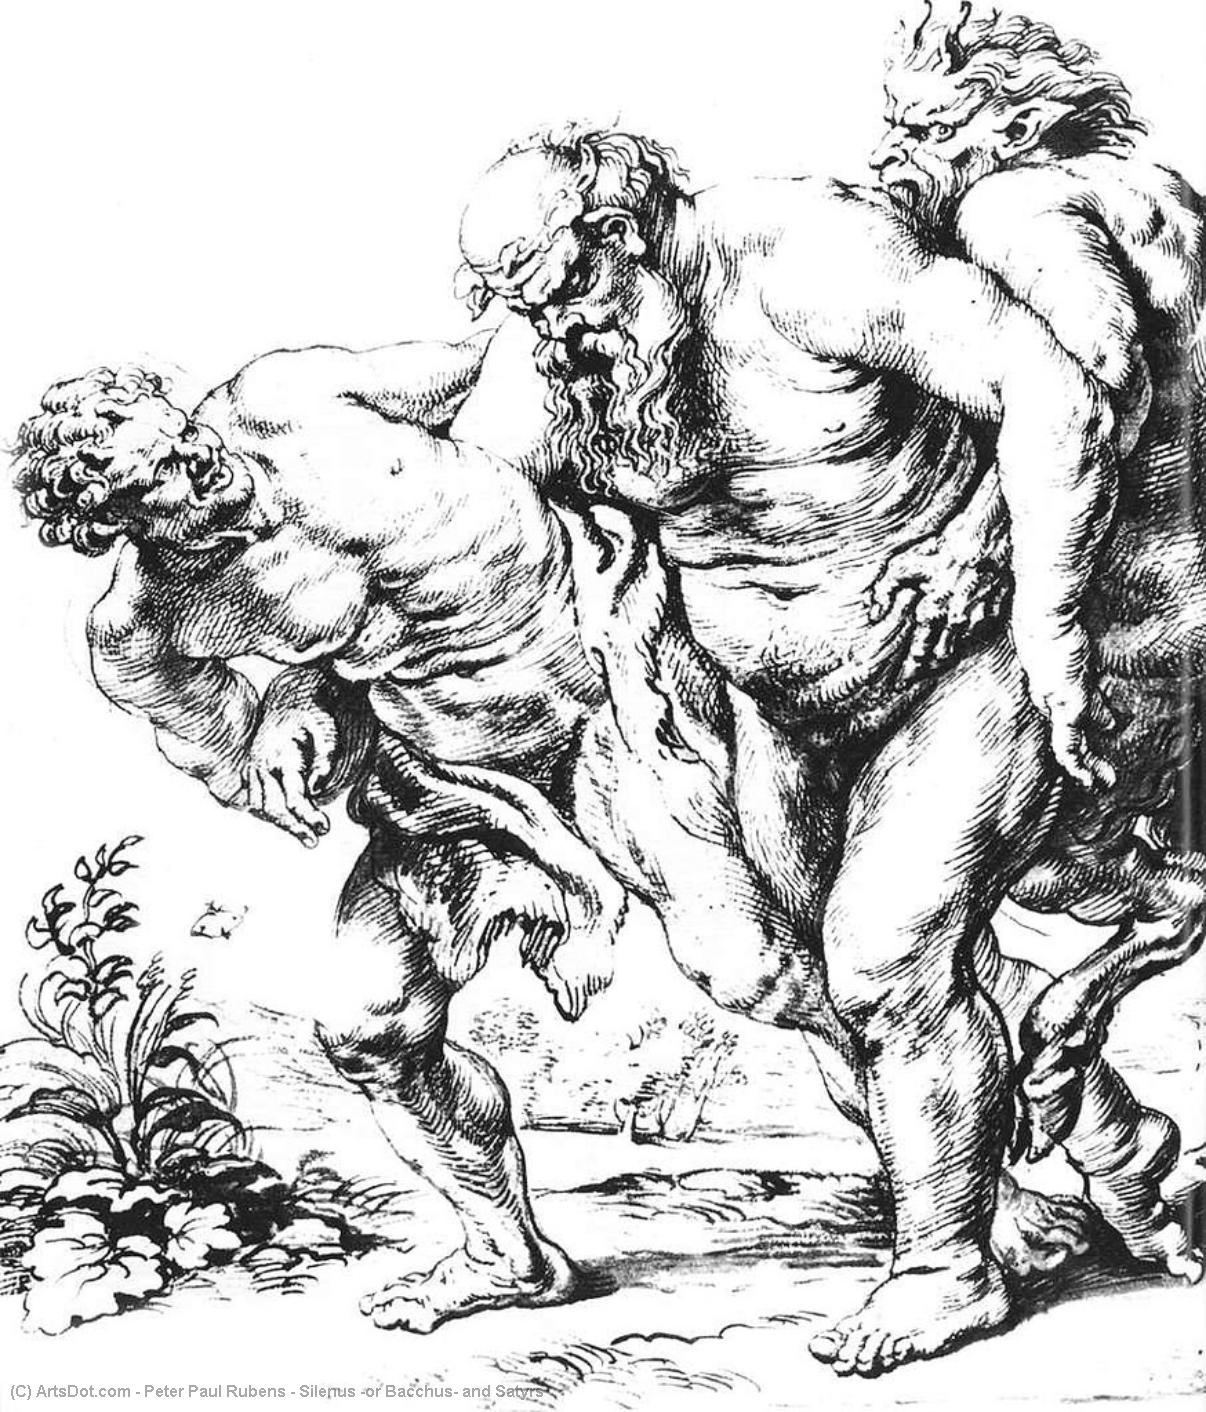 WikiOO.org – 美術百科全書 - 繪畫，作品 Peter Paul Rubens - 西勒诺斯 或  酒神  和  山神